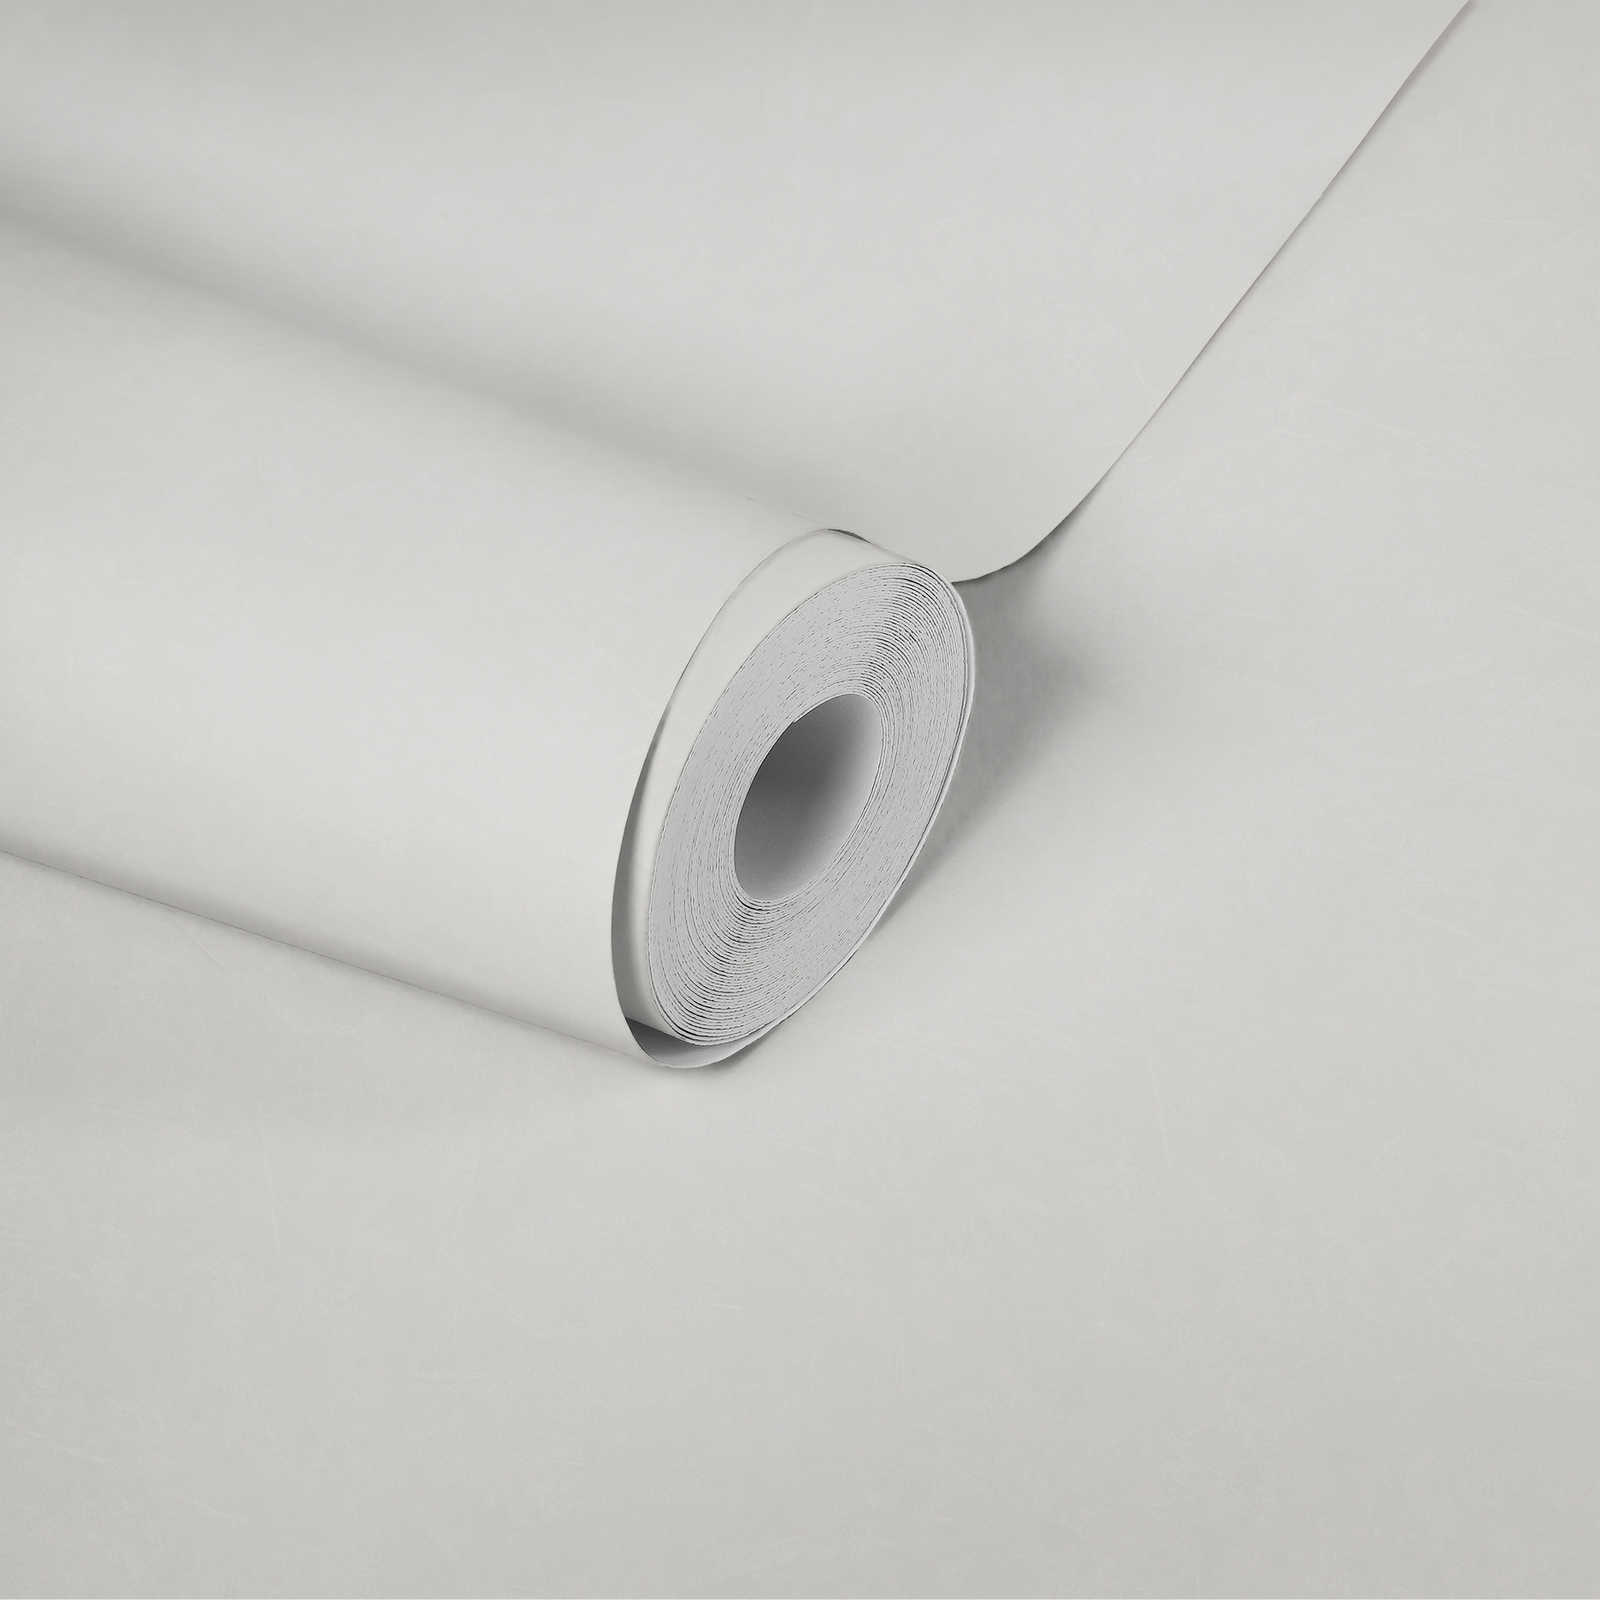             Papier peint plâtre uni avec motif structuré - crème, blanc
        